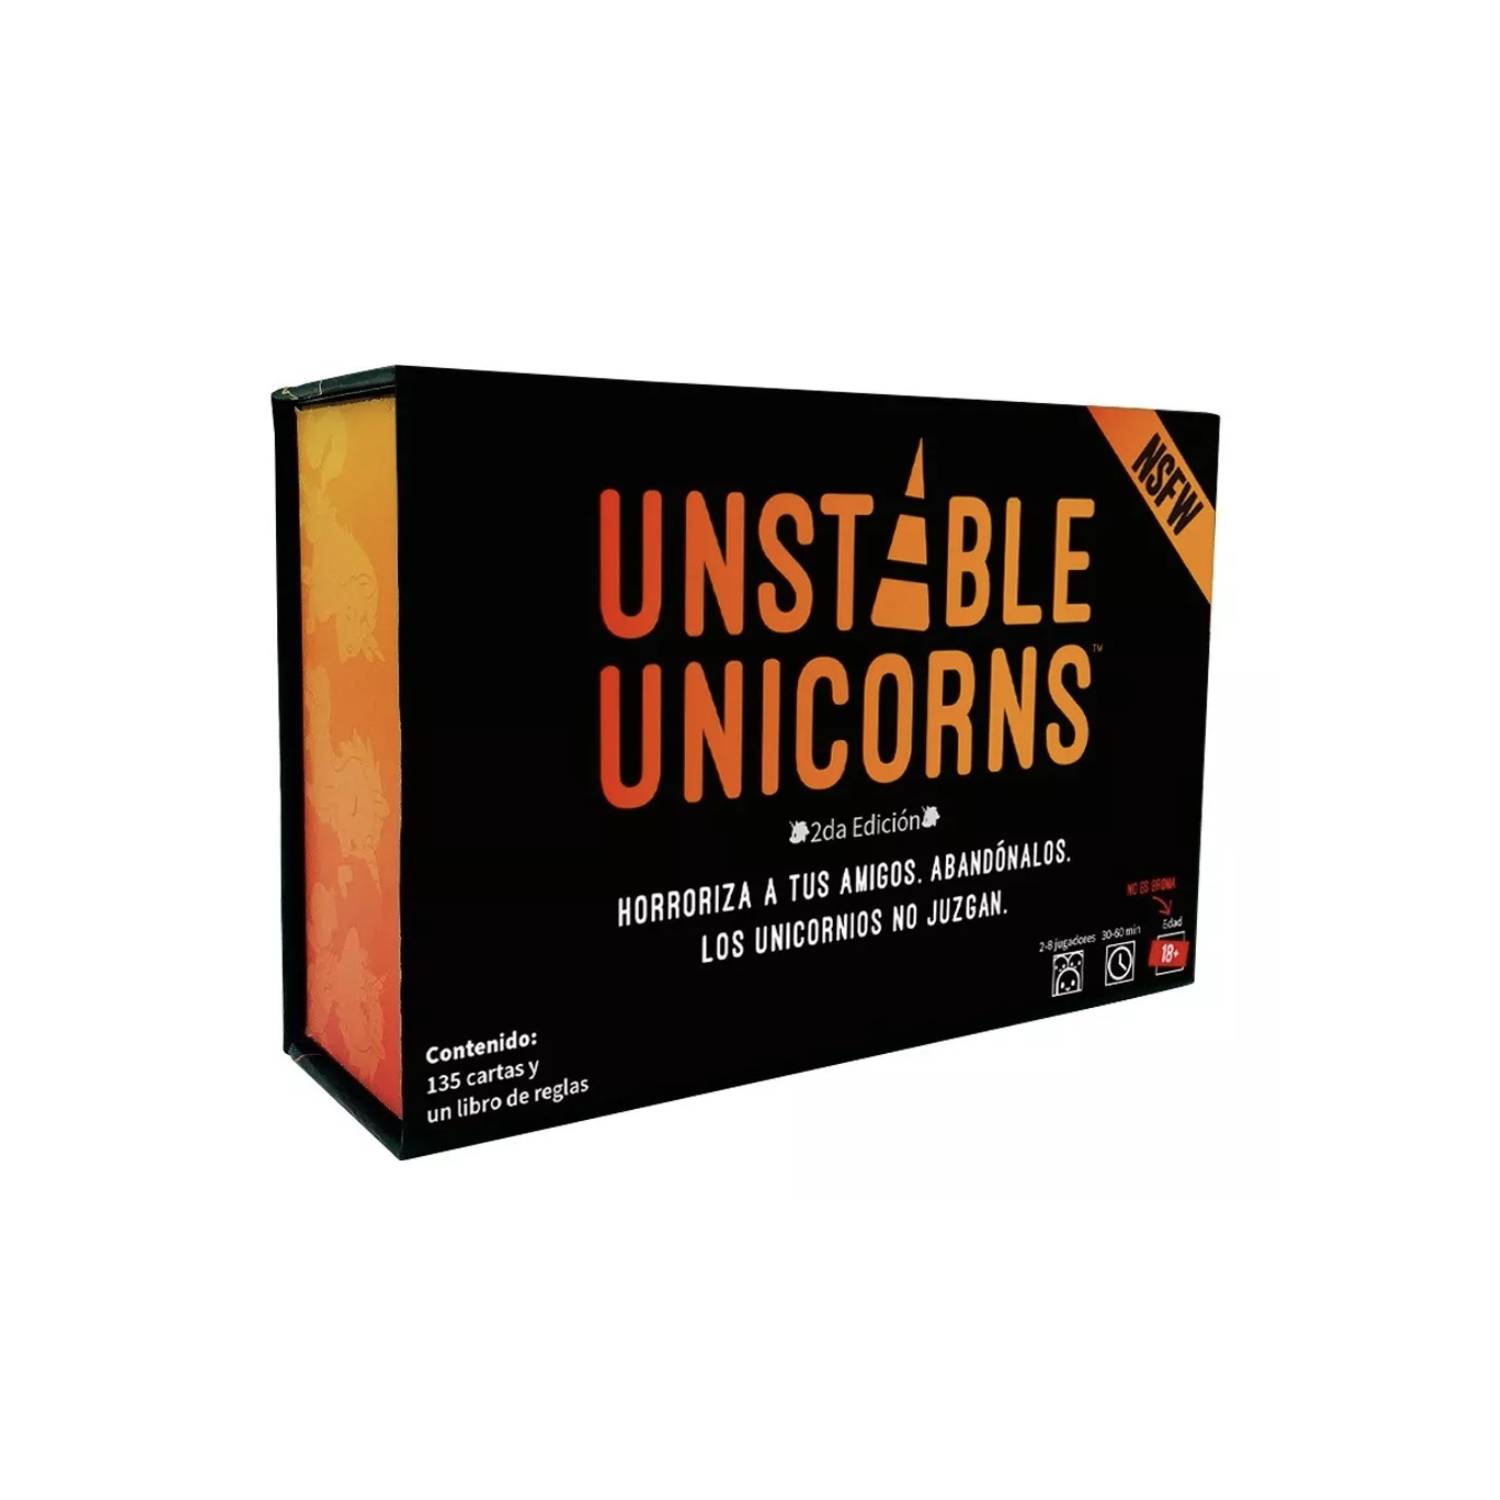 Unstable Unicorns Nswf - Juego De Mesa - Español - Original ASMODEE